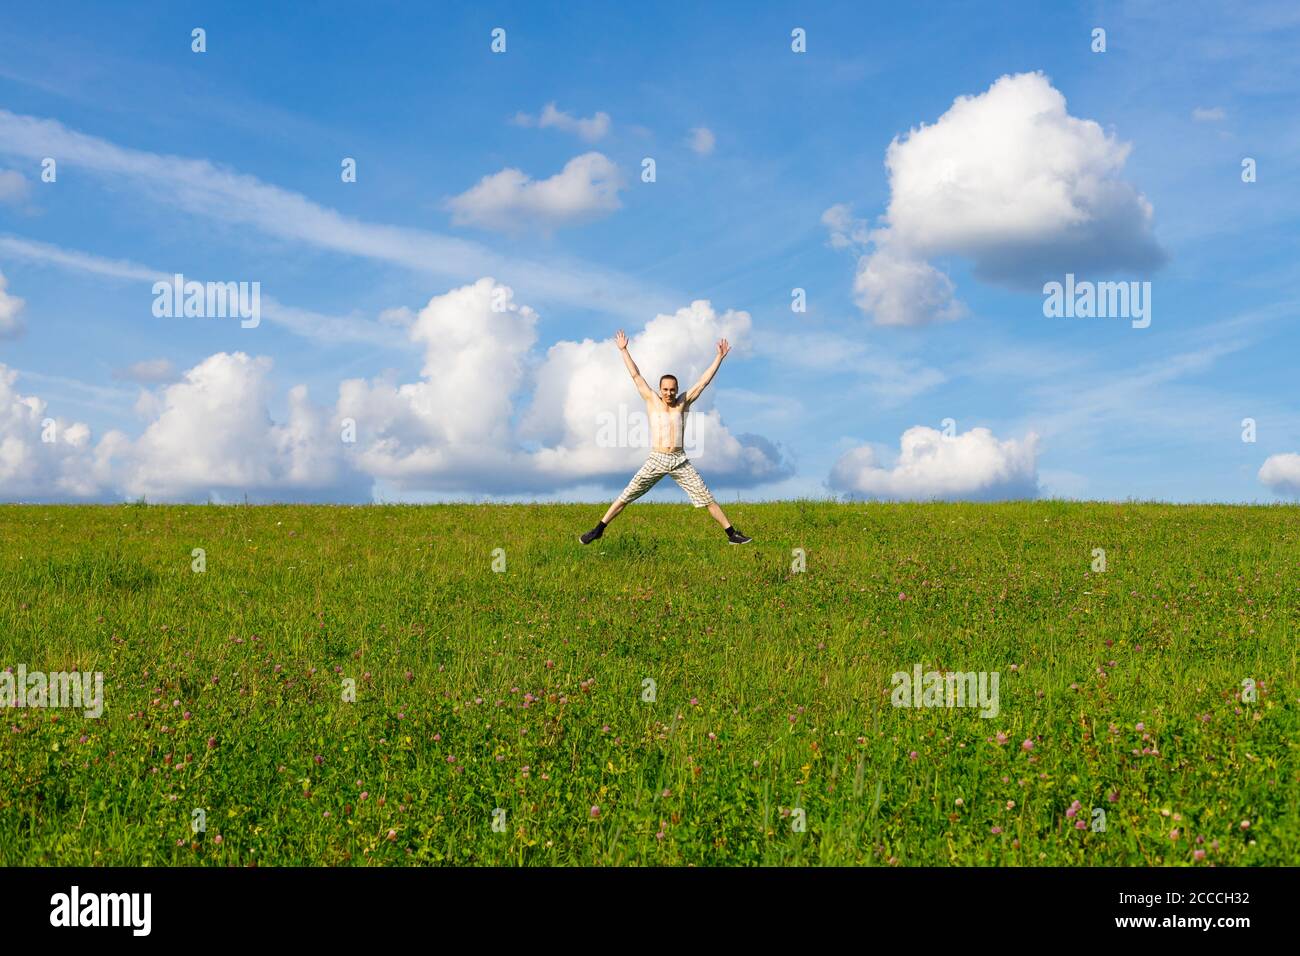 Mann springt auf Wiese auf schönen blauen Himmel und weiß Wolken Hintergrund Stockfoto